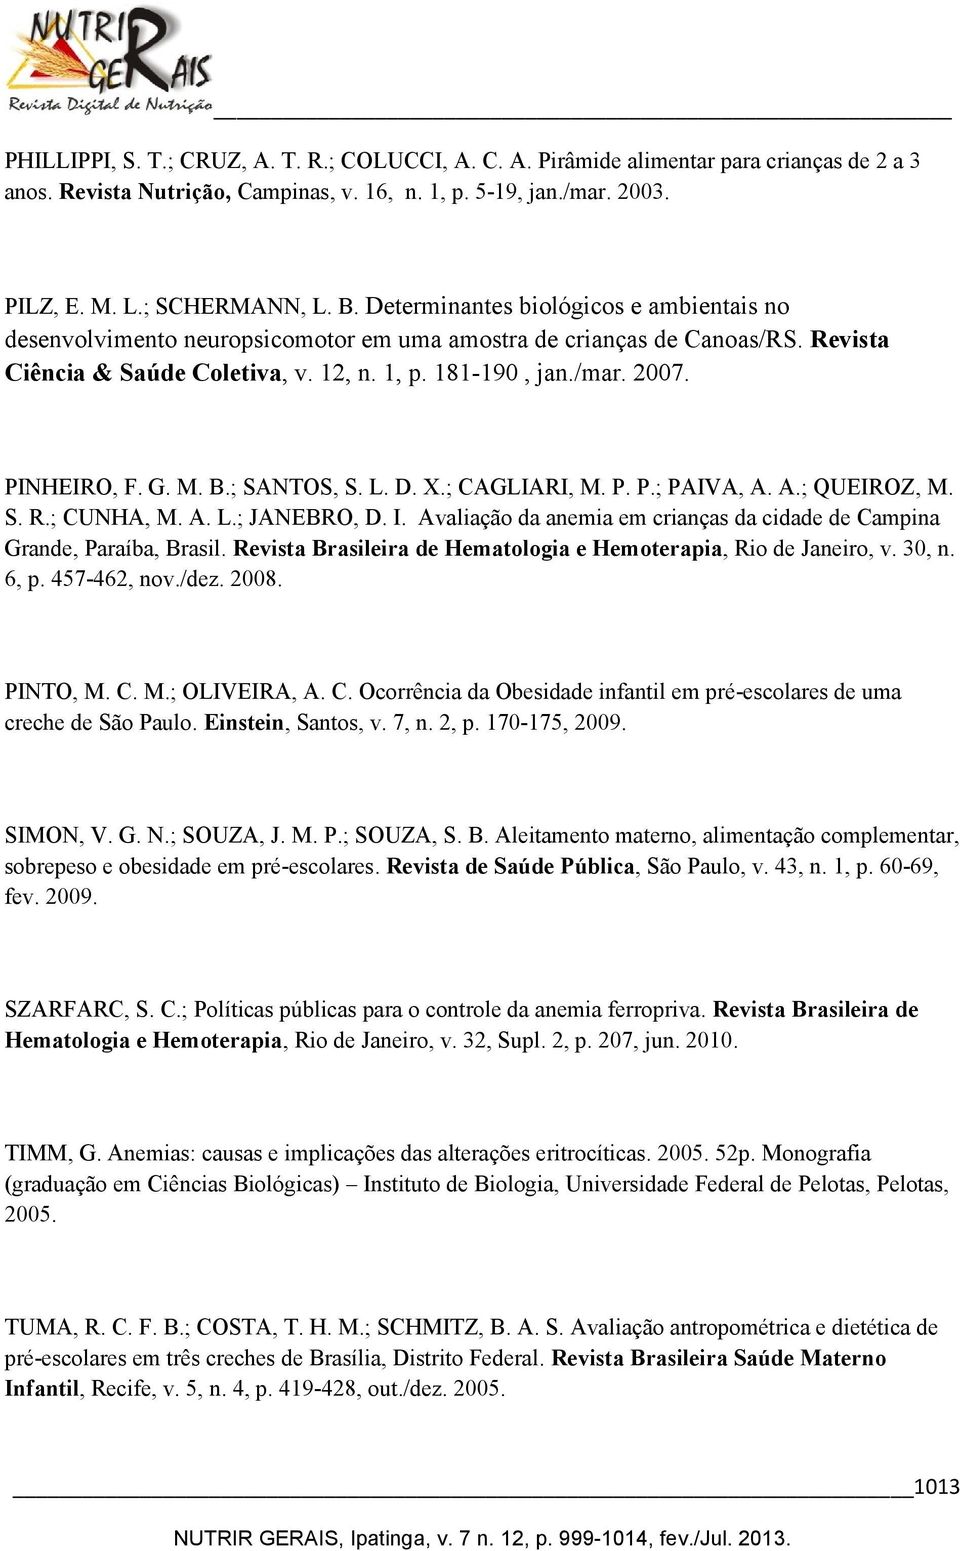 PINHEIRO, F. G. M. B.; SANTOS, S. L. D. X.; CAGLIARI, M. P. P.; PAIVA, A. A.; QUEIROZ, M. S. R.; CUNHA, M. A. L.; JANEBRO, D. I.